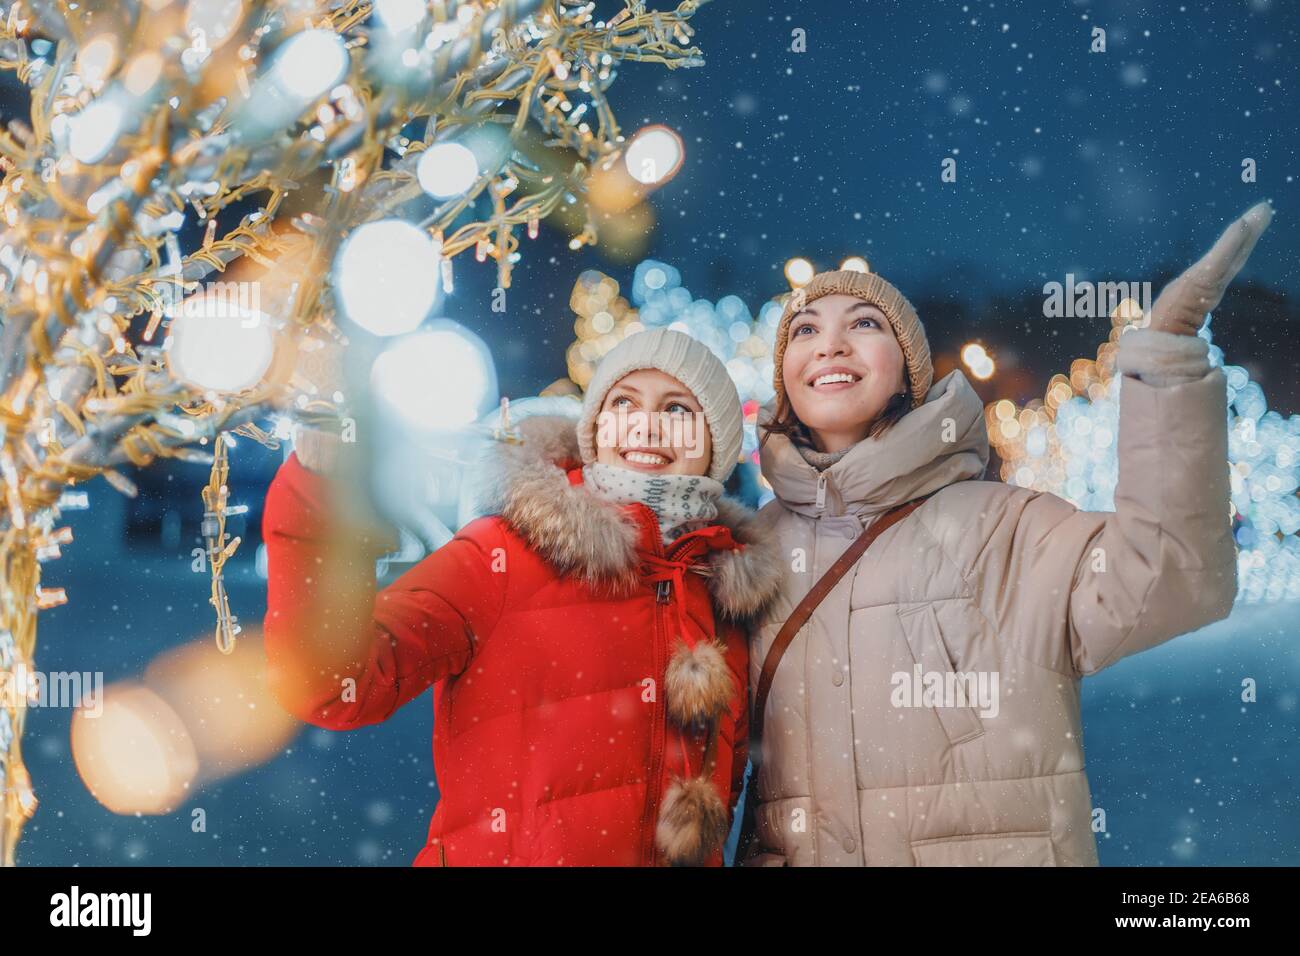 Filles amis s'amusant dans le centre-ville décoré avec des lumières et des guirlandes pour la nuit de Noël et les vacances du nouvel an. Amitié et concept de vacances Banque D'Images